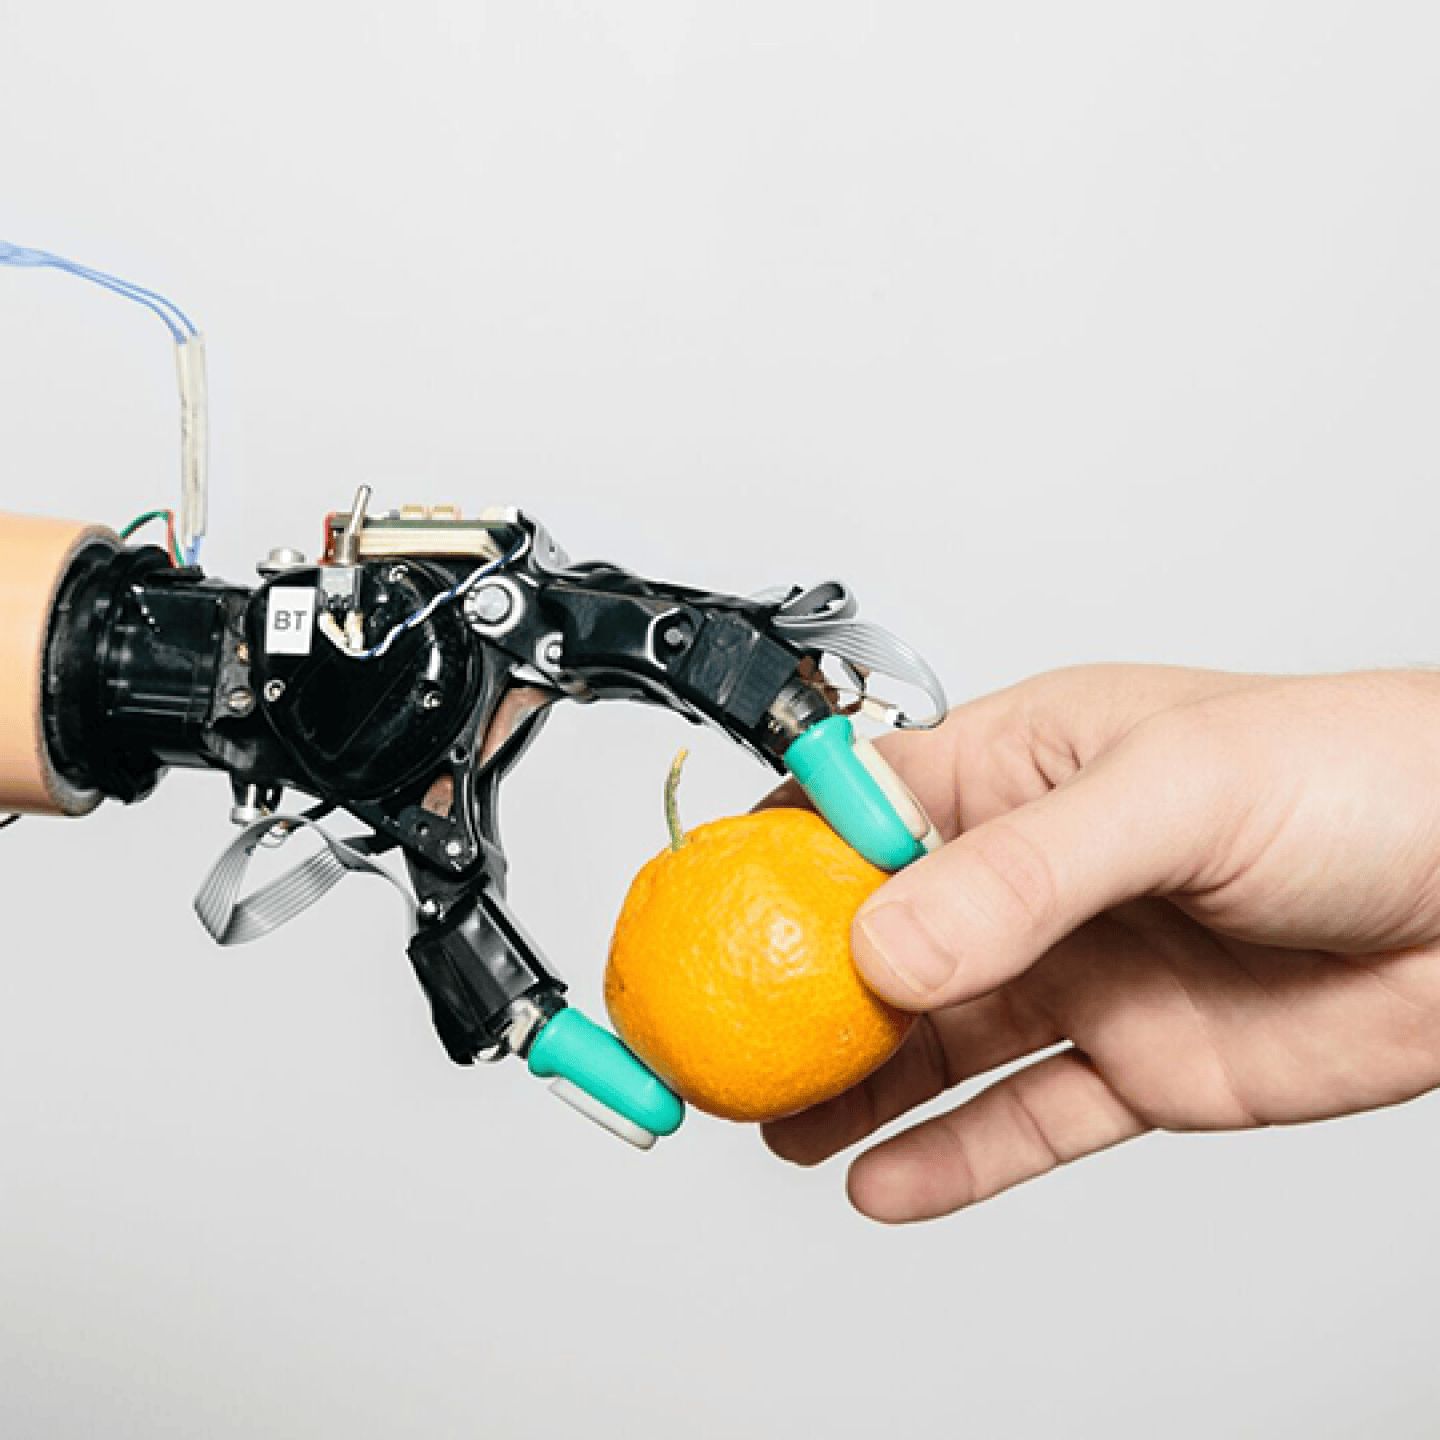 Рука робота берет апельсин из руки человека